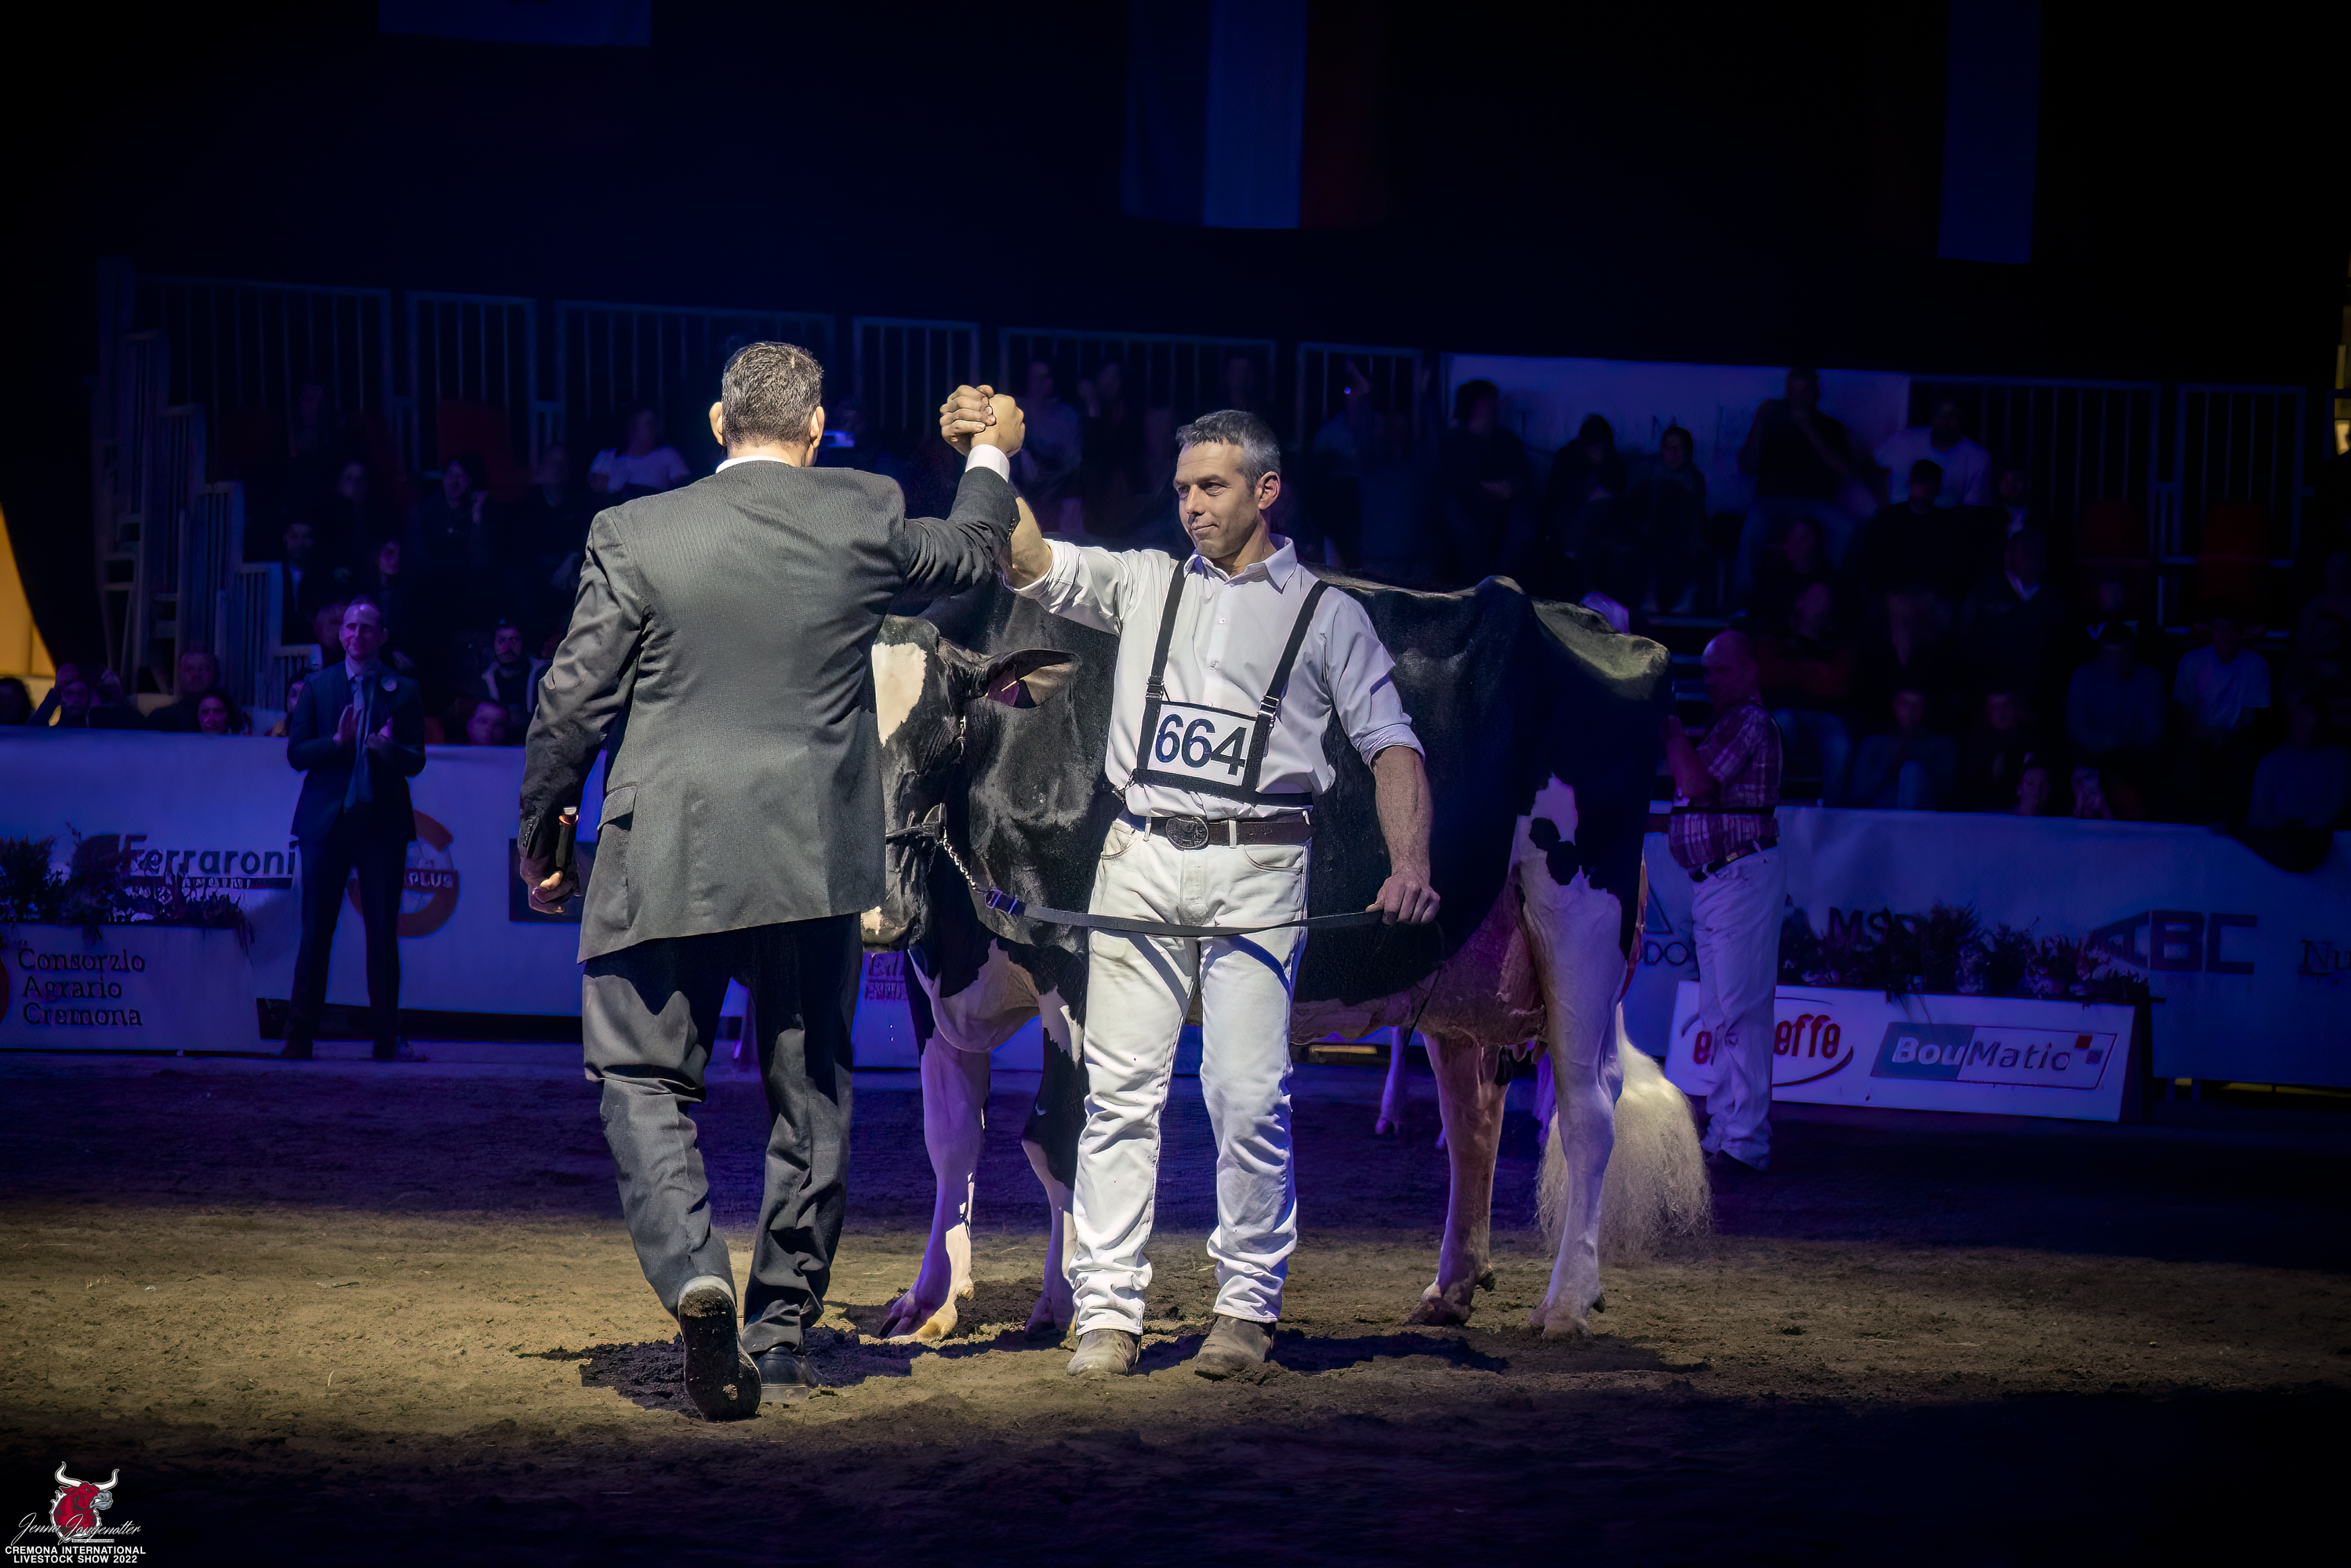 Cremona International Holstein Show 2022